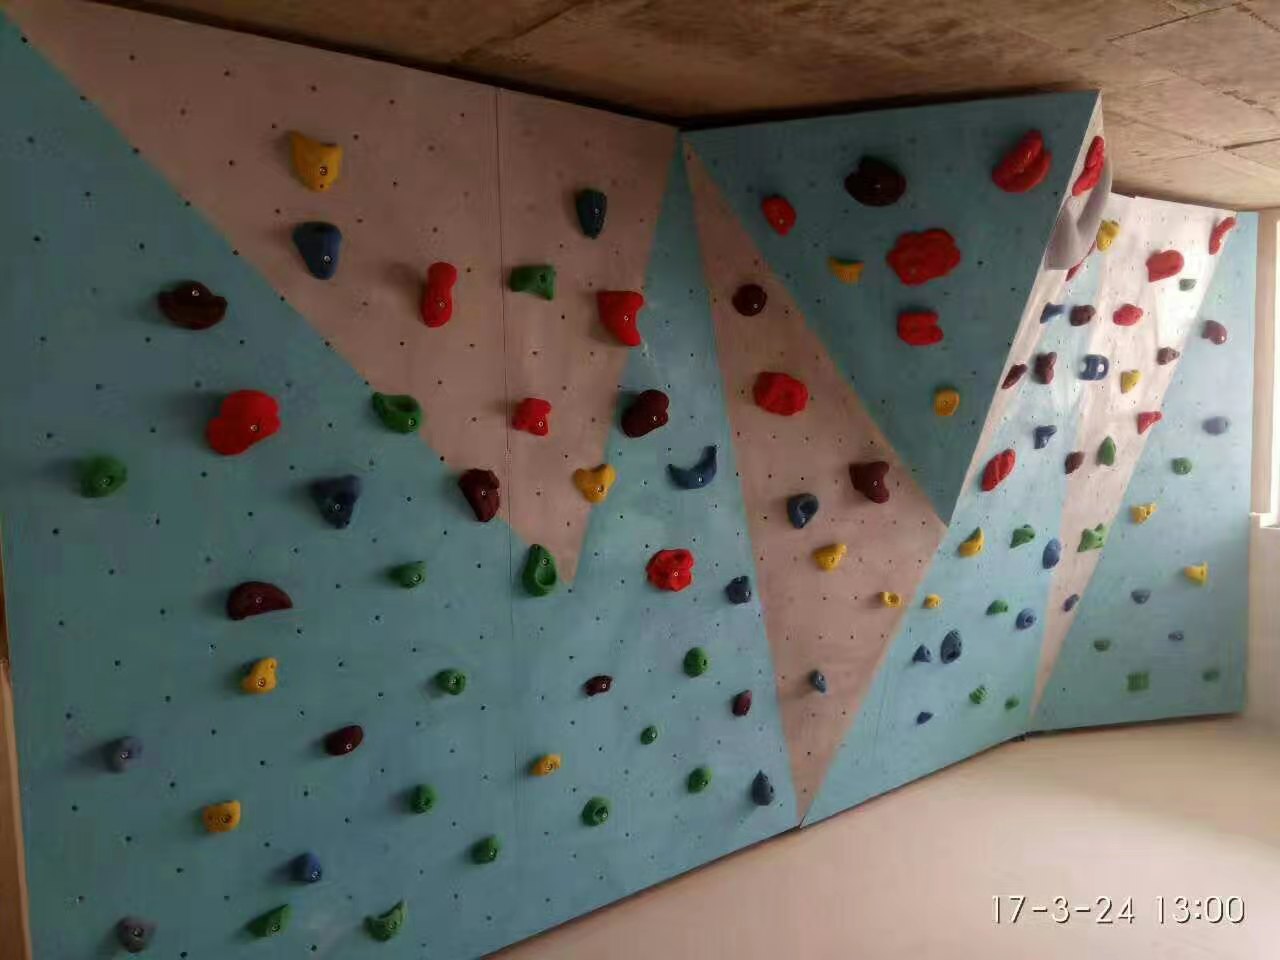 厂家直销攀岩板，上海博儒专业攀岩墙制作，儿童攀岩/成人攀岩搭建施工！